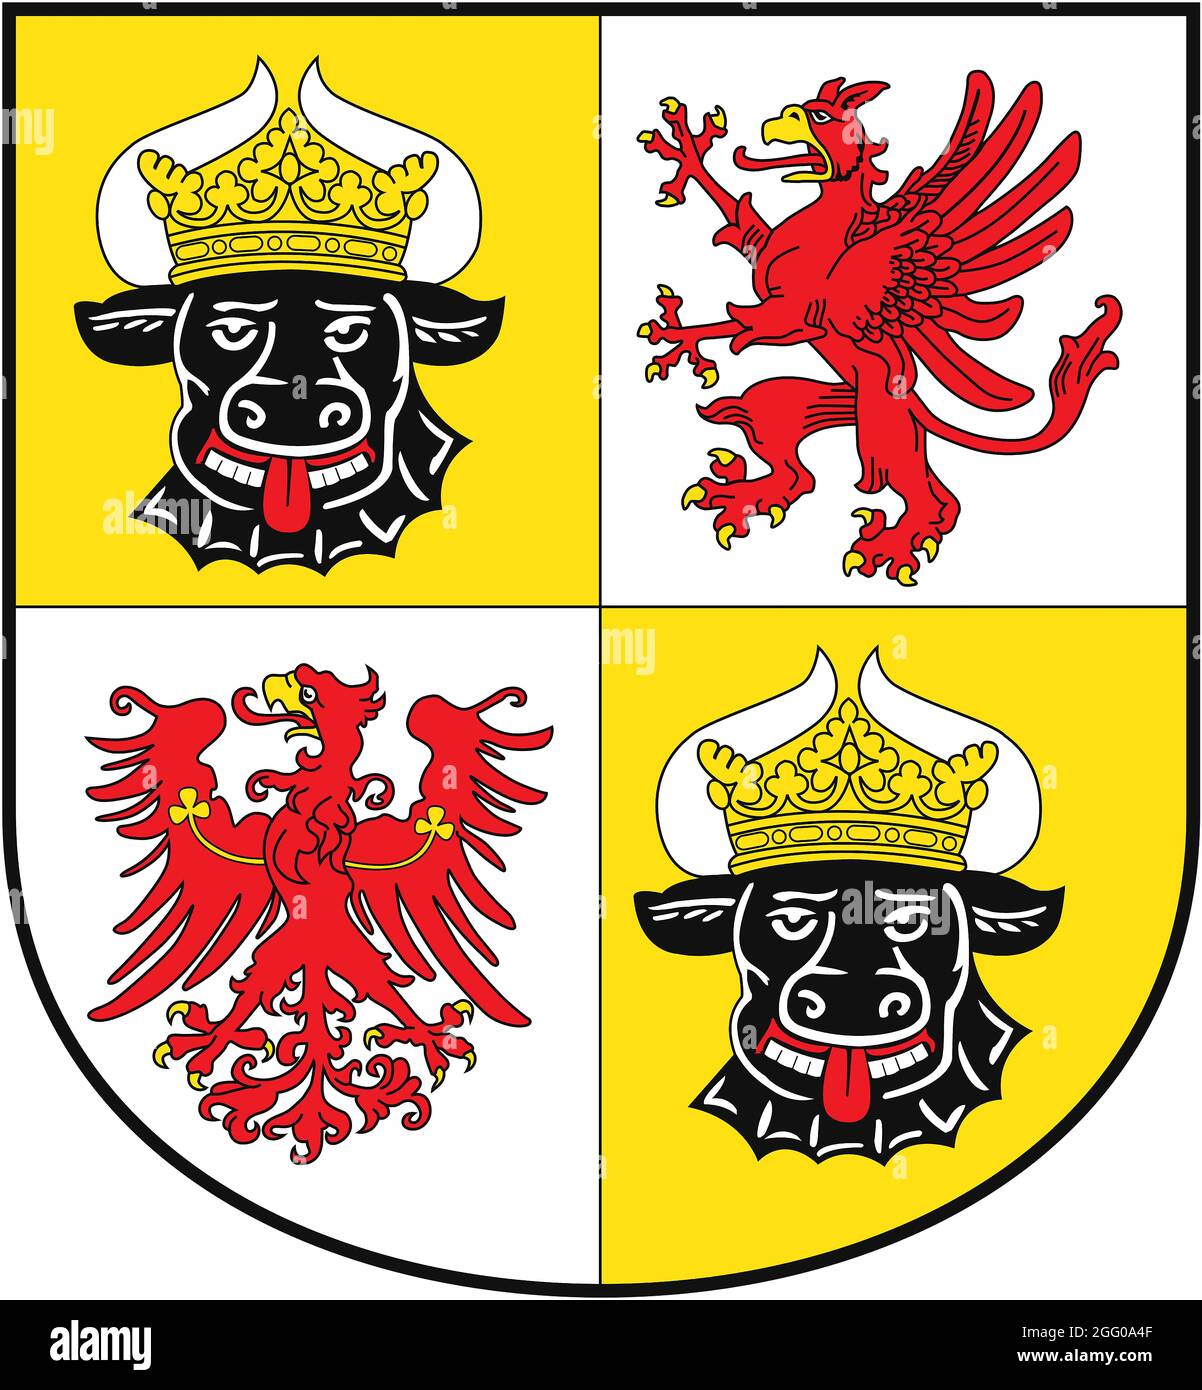 Stemma dello stato tedesco Meclemburgo-Pomerania occidentale - Germania. Foto Stock